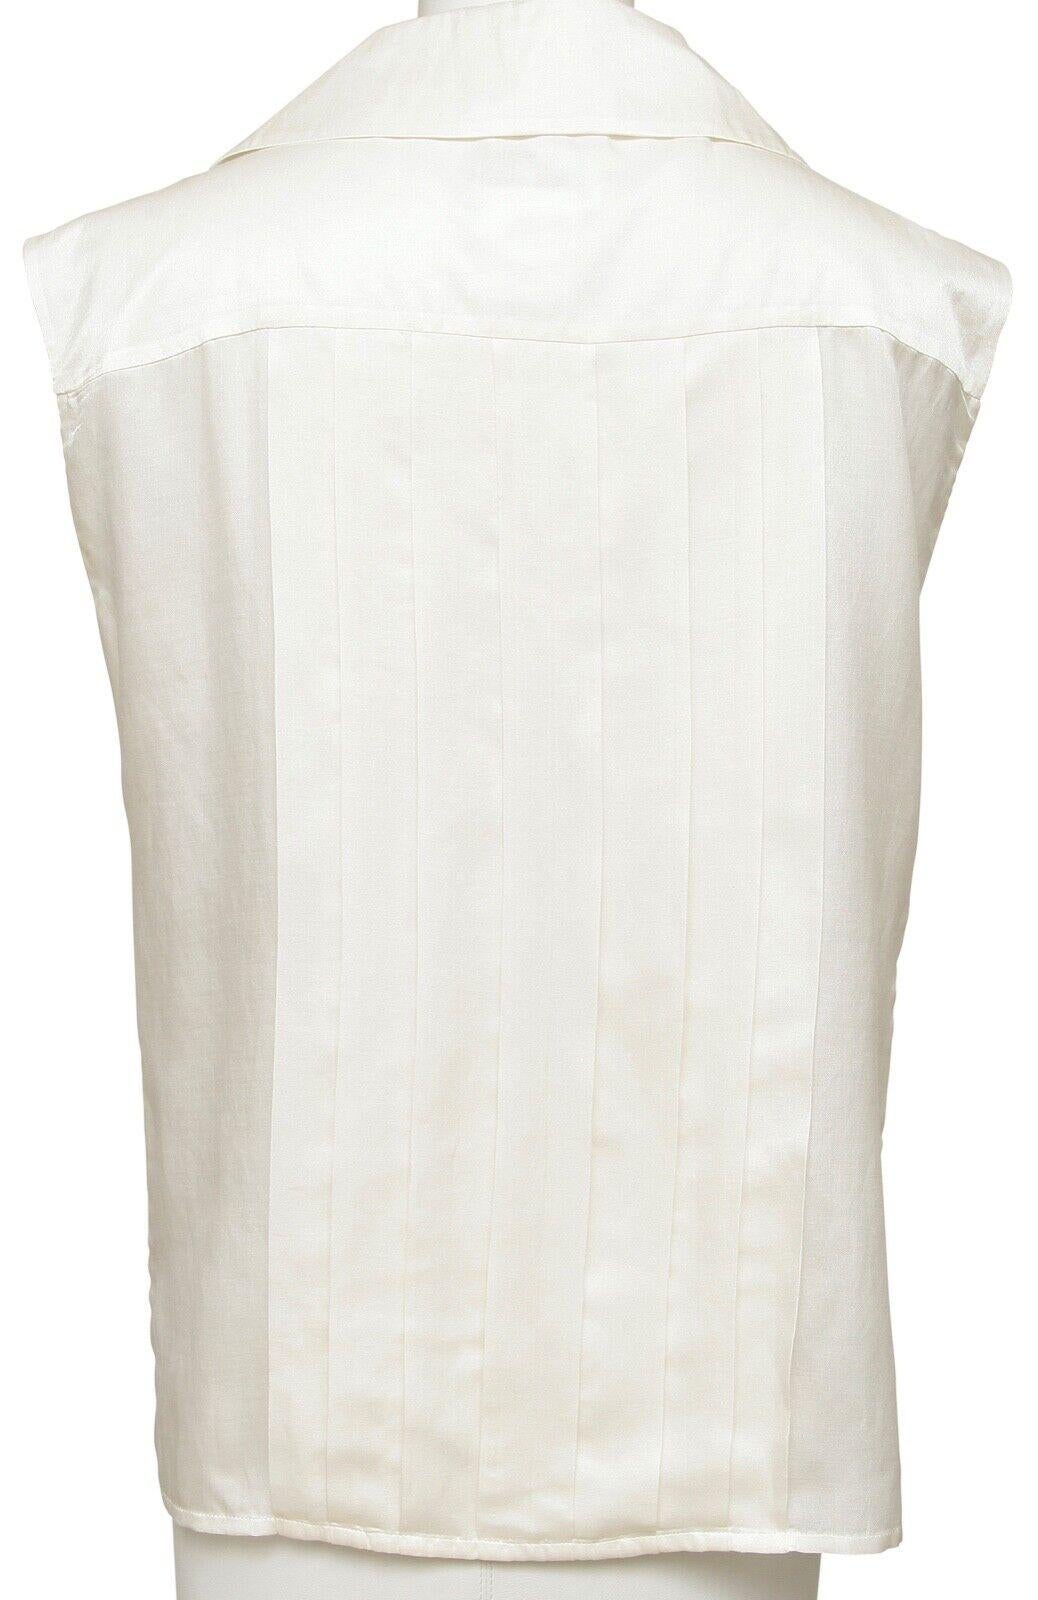 Women's CHANEL Sleeveless Blouse Top Shirt Ivory Ecru Cotton Silk Pleats Collar Sz 44